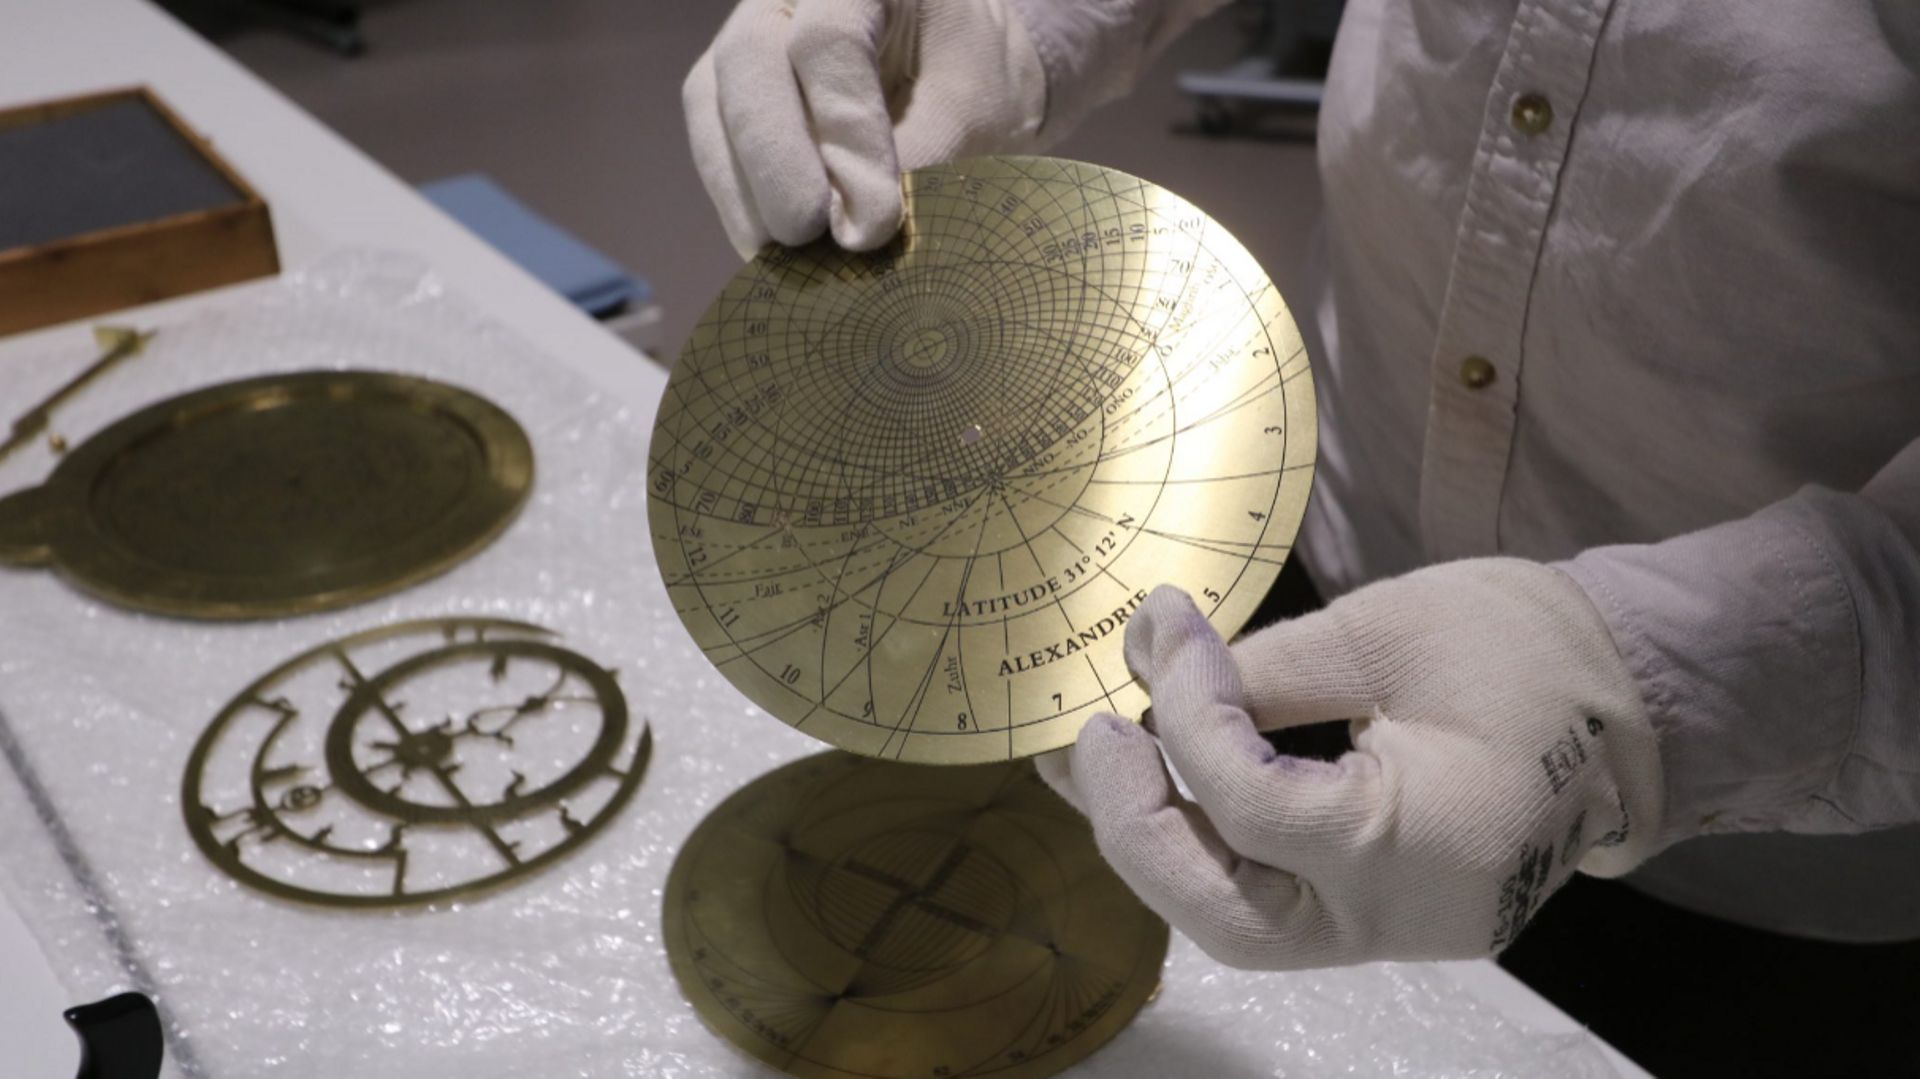 L’astrolabe en laiton fabriqué par la française Brigitte Alix qui est la seule personne en Europe qui fabrique encore aujourd’hui de vrais astrolabes.

